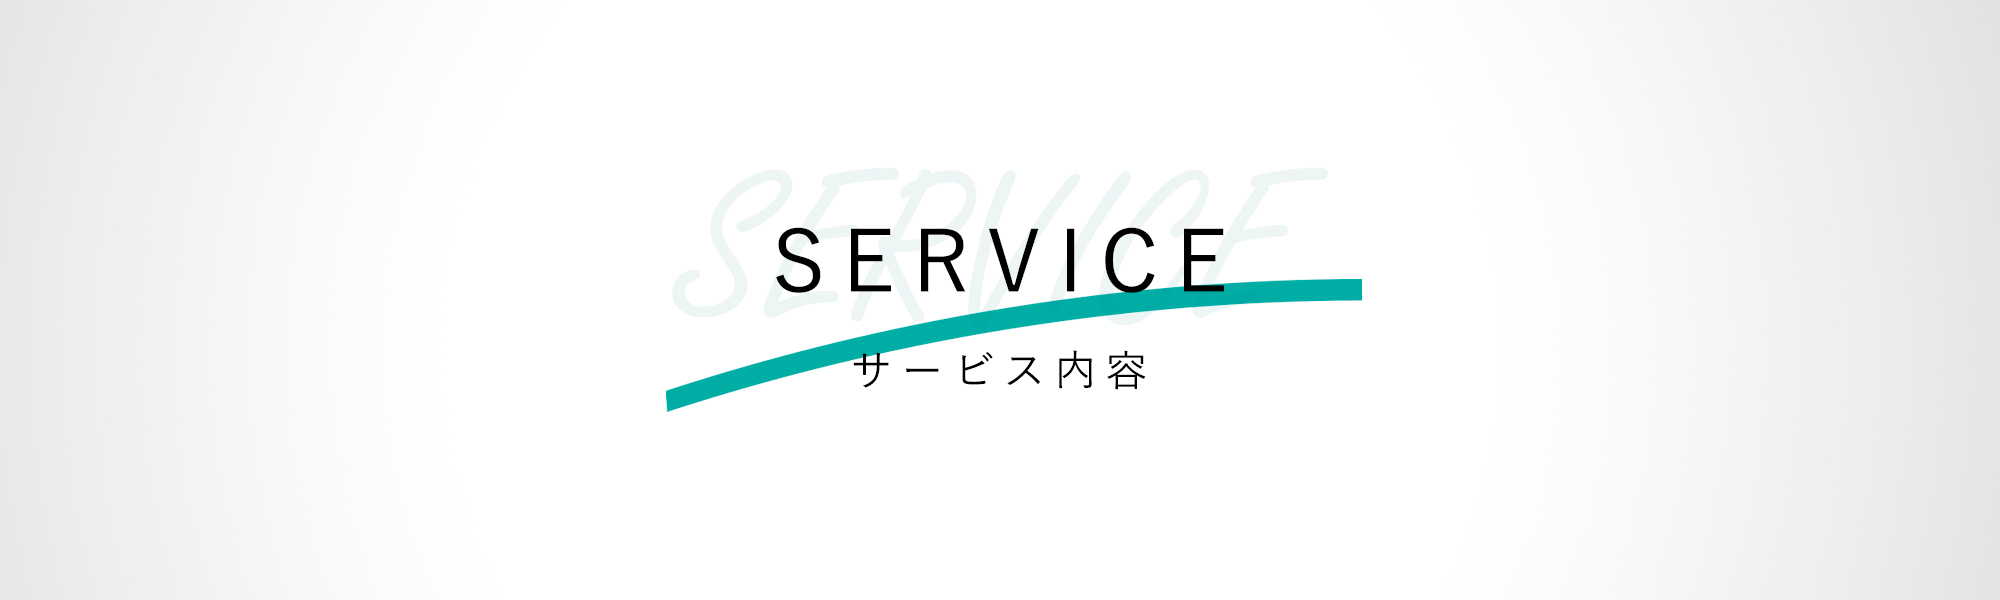 愛知県刈谷市でホームページ制作から各種広告制作など、幅広いサービスを展開しております。